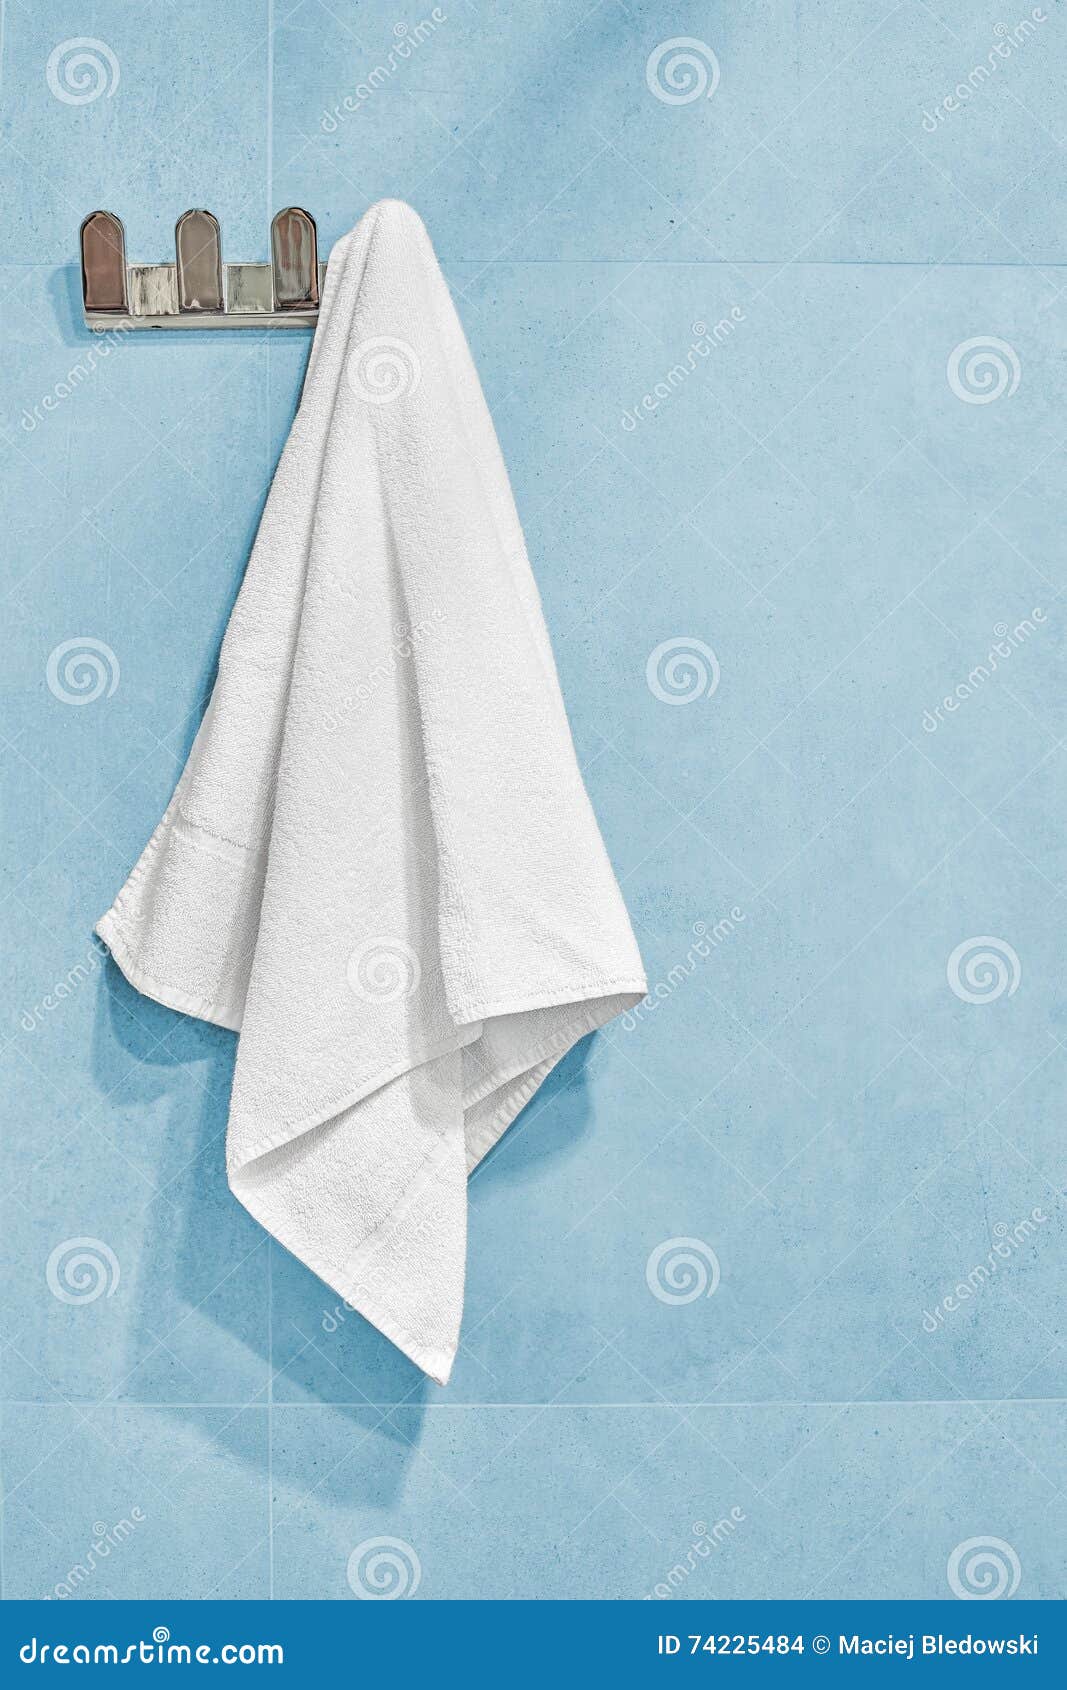 Полотенце весит. Полотенце висит. Полотенце висит на стене. Белое полотенце висит. Полотенце на стене.